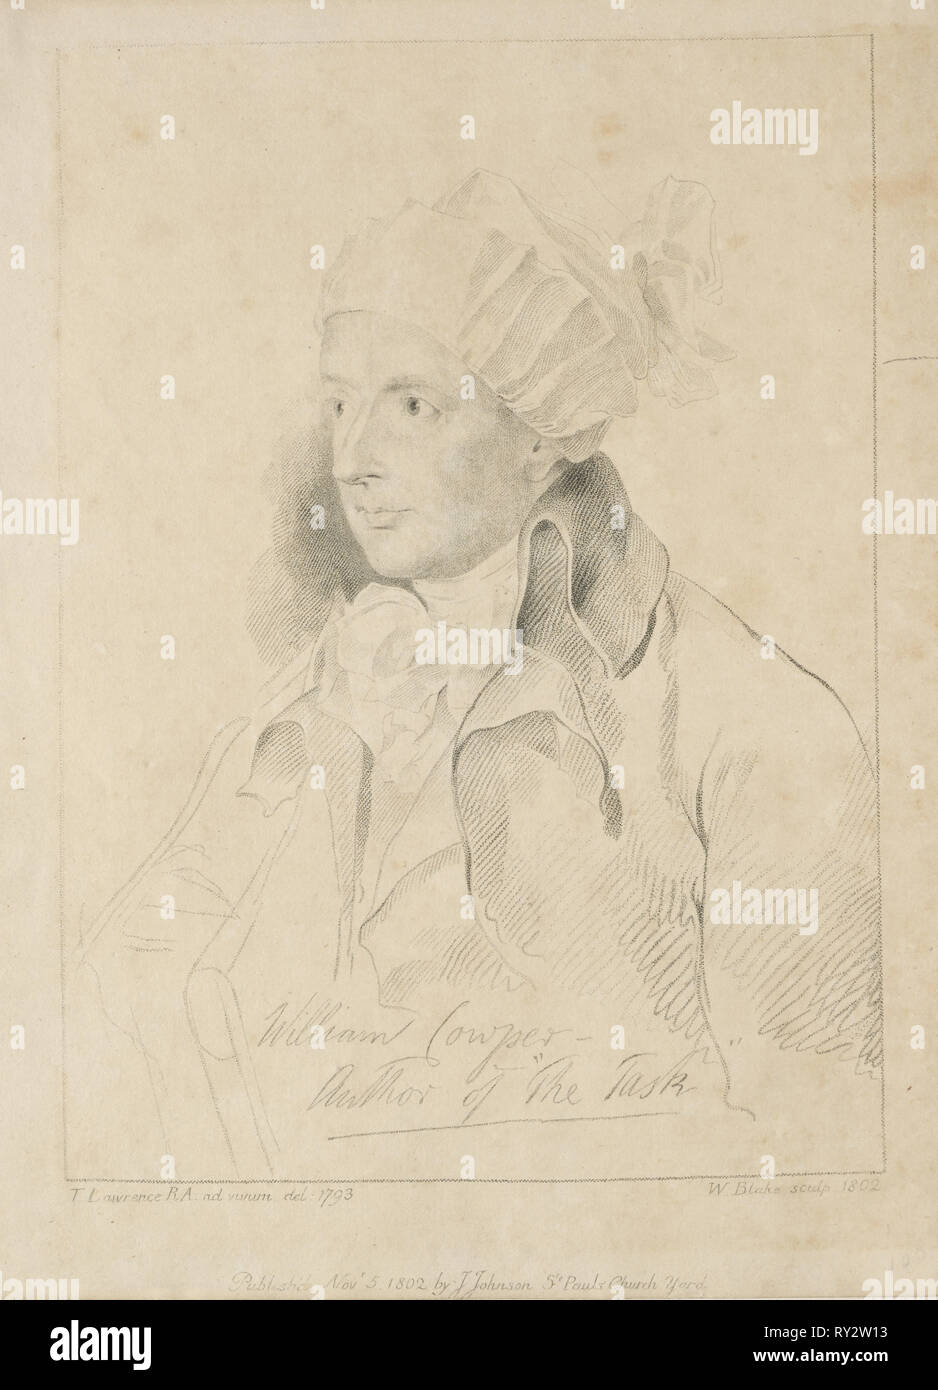 William Cowper, 1802. William Blake (British, 1757-1827). Engraving Stock Photo